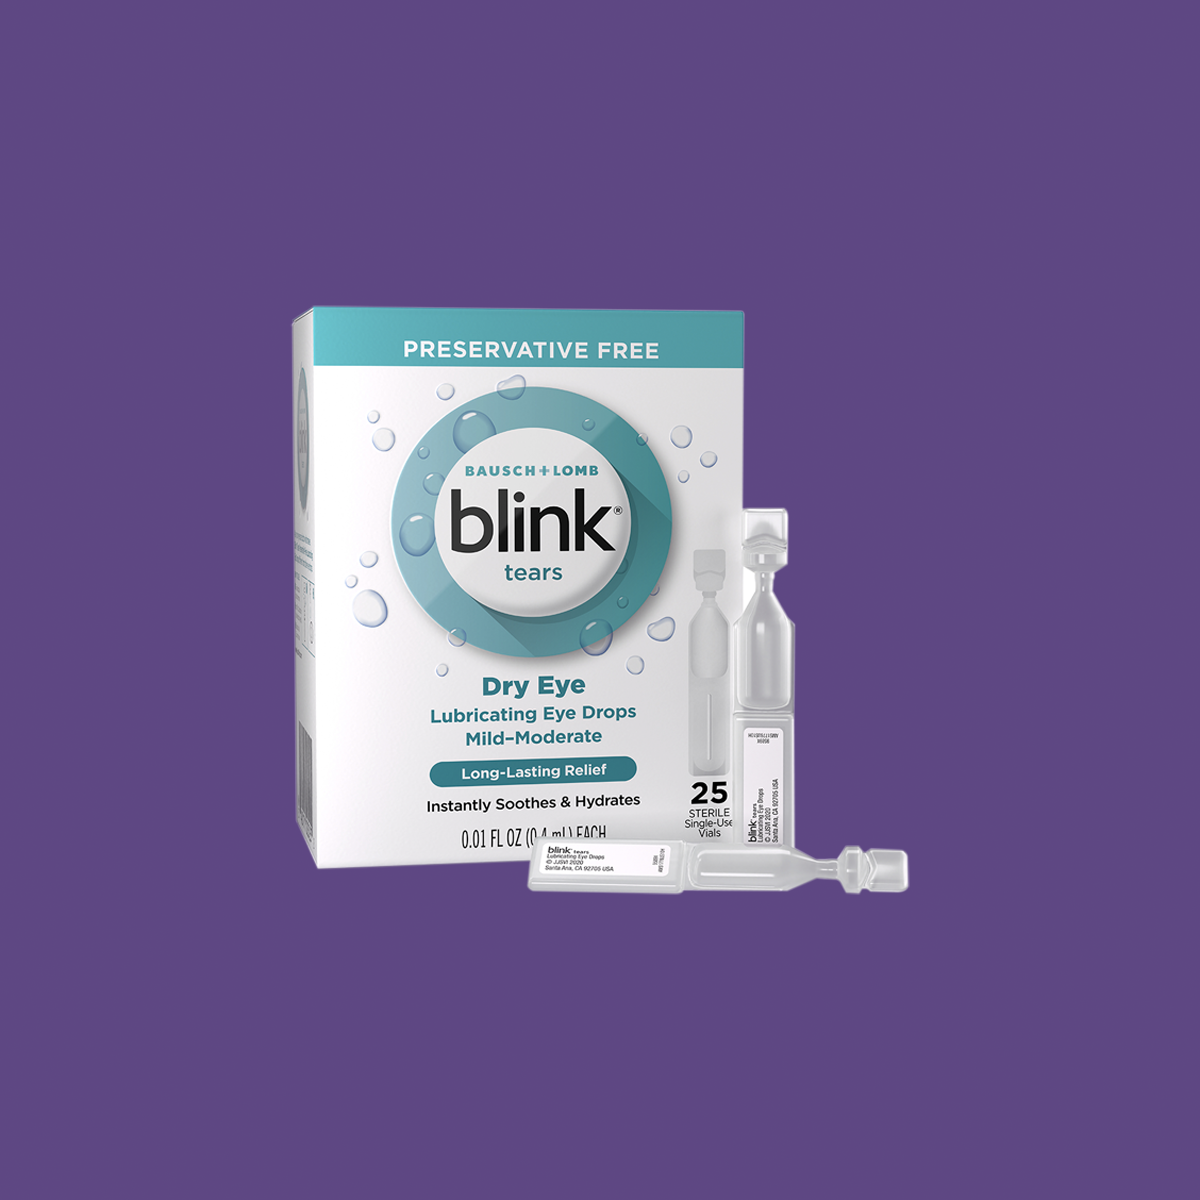 Blink Tears Preservative Free Lubricating Eye Drops Vials (25 Count)